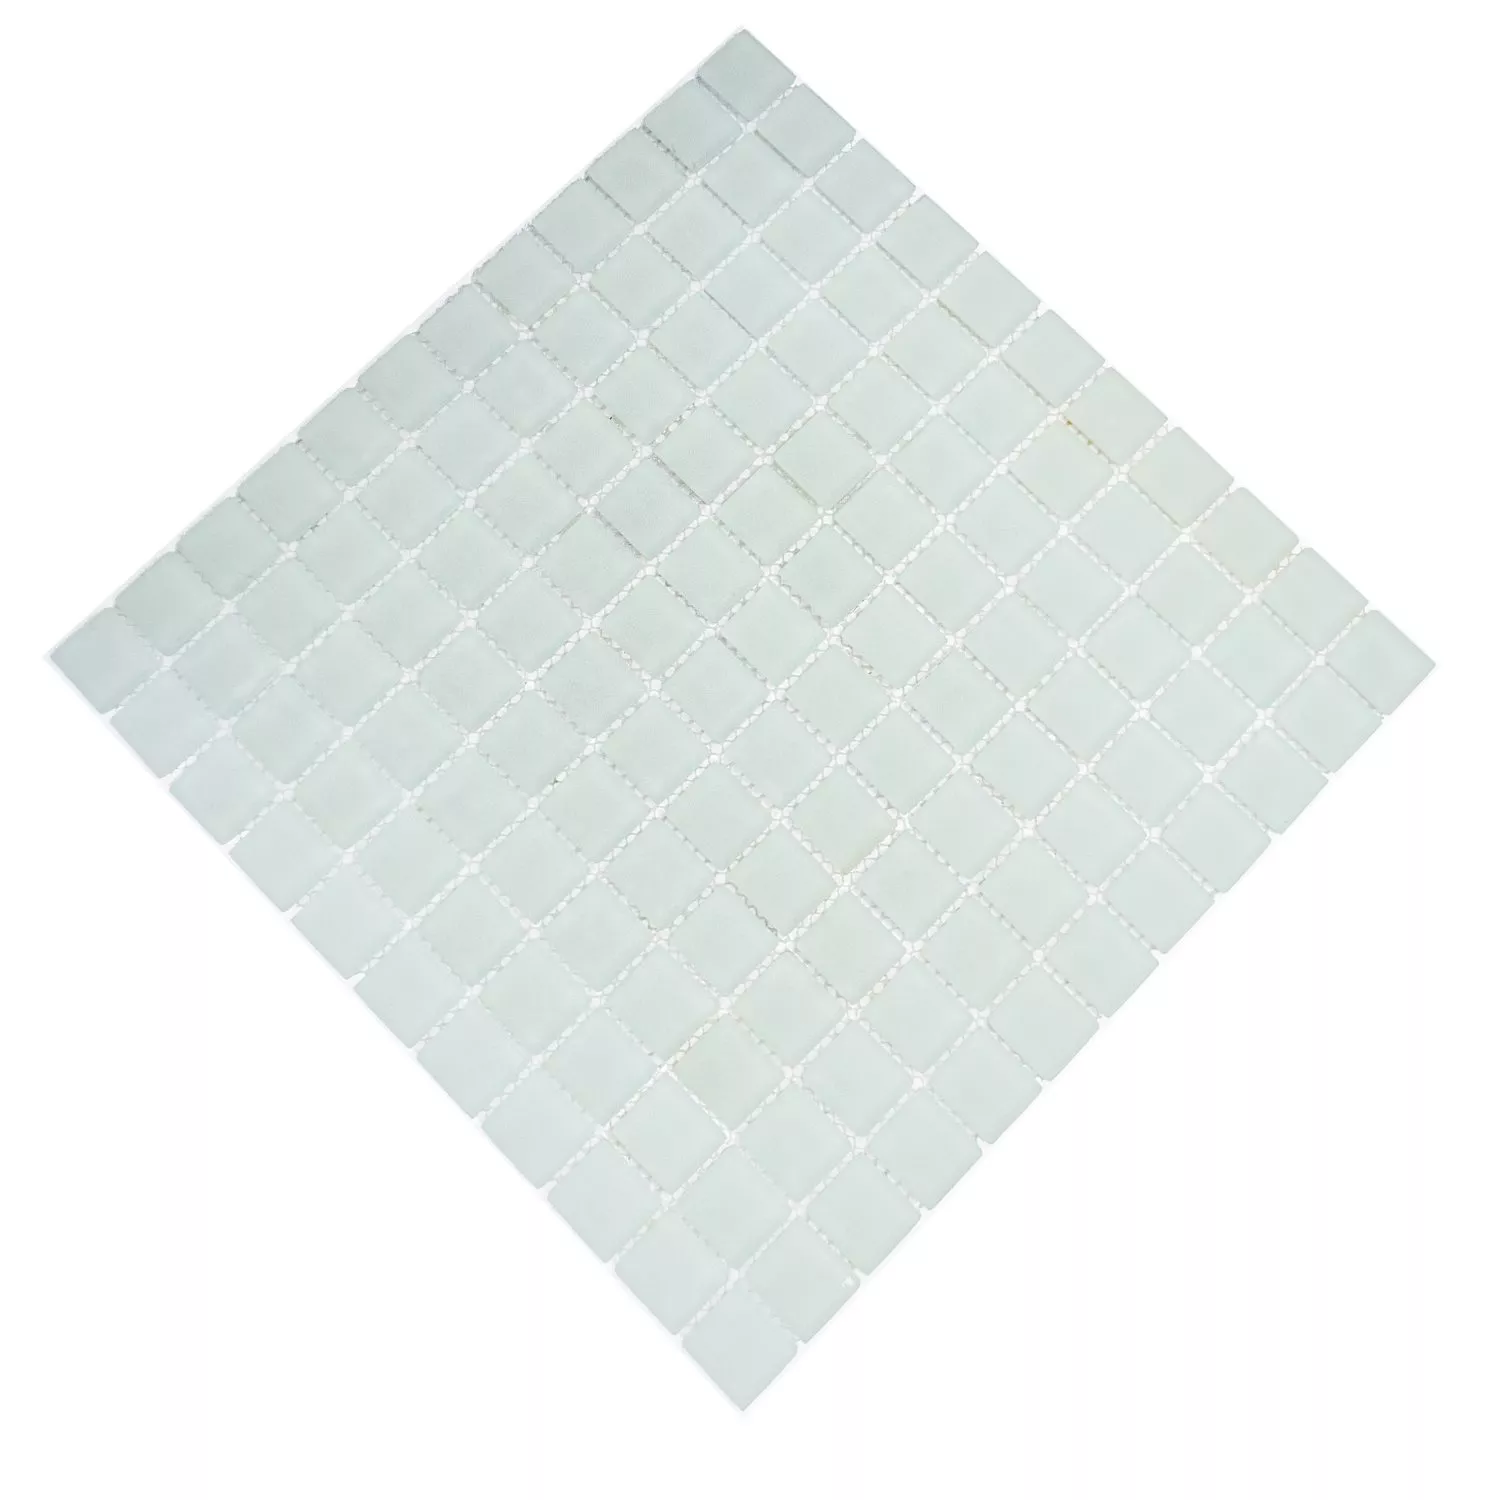 Mosaico De Vidro Azulejos Branco Fosco Fosco